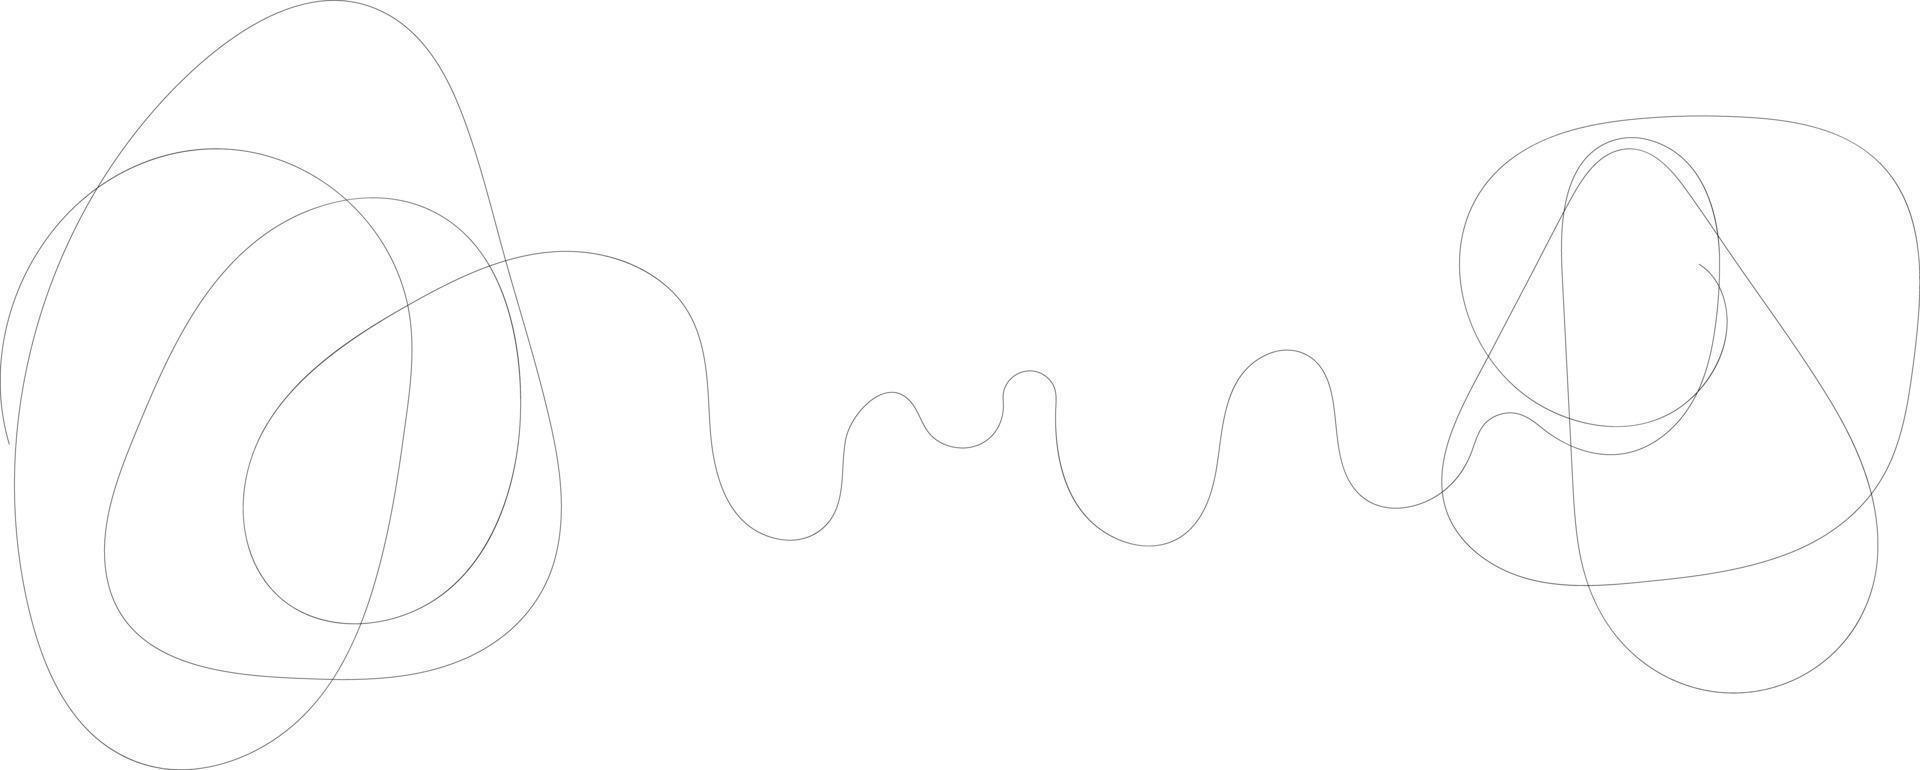 arte moderna de linha única. esboço linear preto minimalista isolado vetor